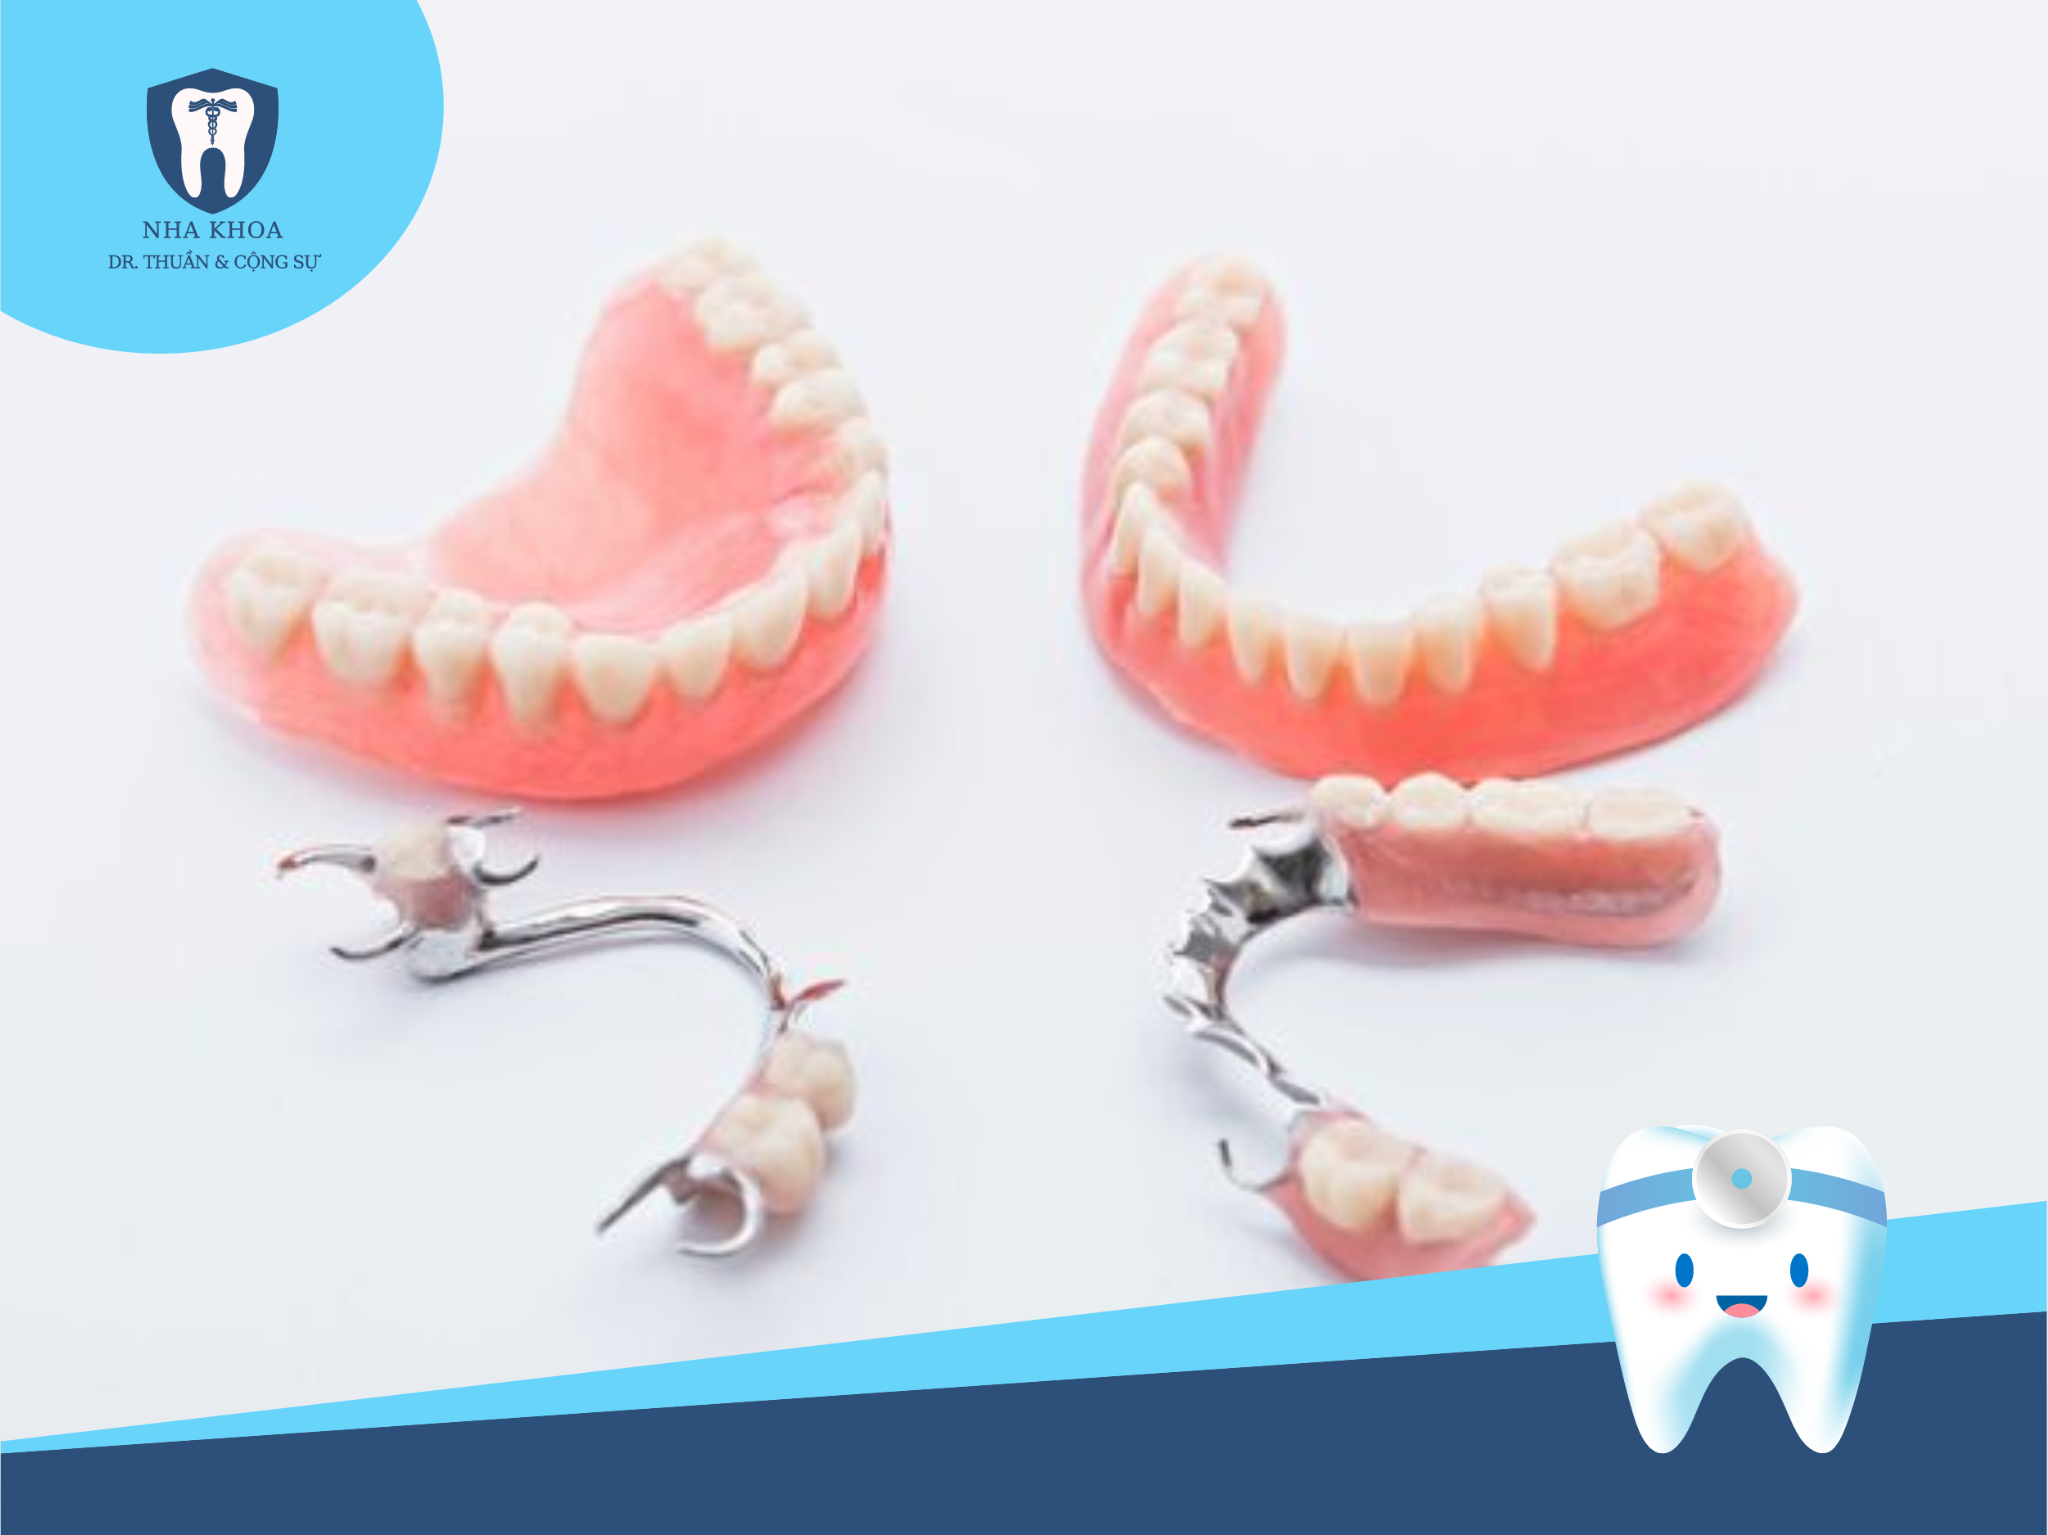 Hàm giả tháo lắp là một trong những phương pháp phục hình răng mất phổ biến hiện nay, được nhiều người lựa chọn vì tính tiện ích và chi phí hợp lý.